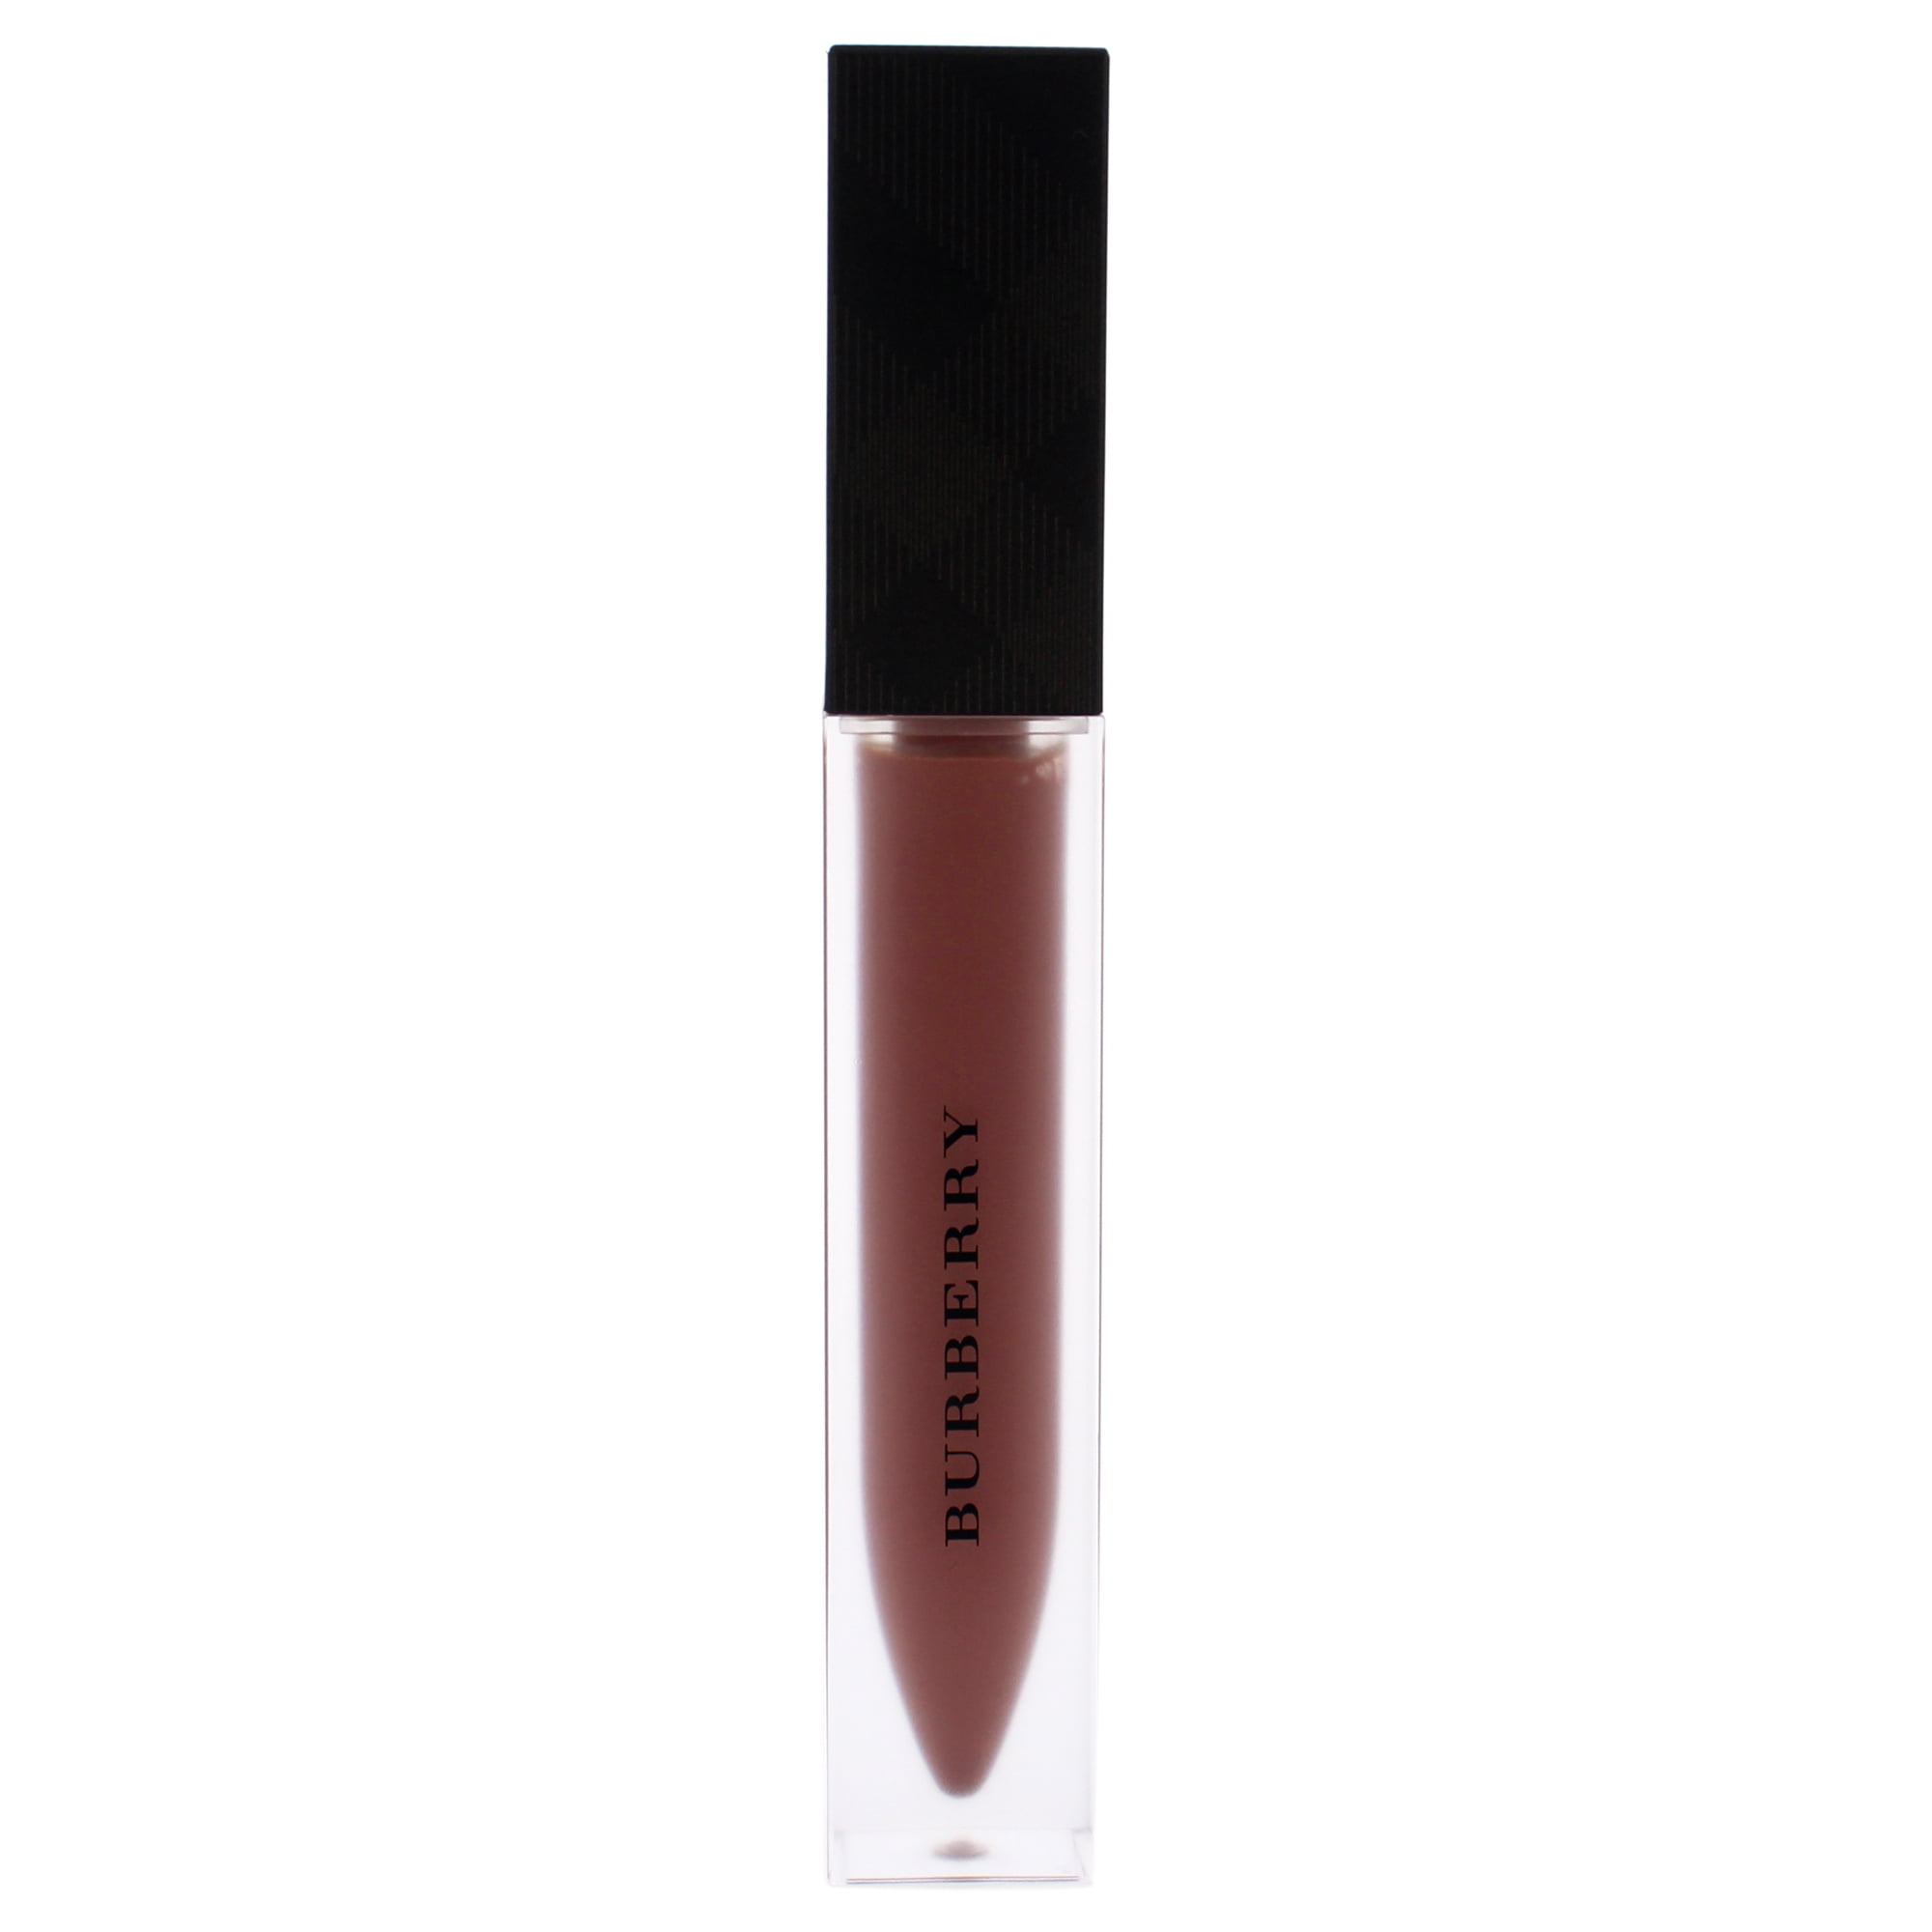 Liquid Lip Velvet Crush - 05 Fawn by Burberry for Women  oz Lipstick -  